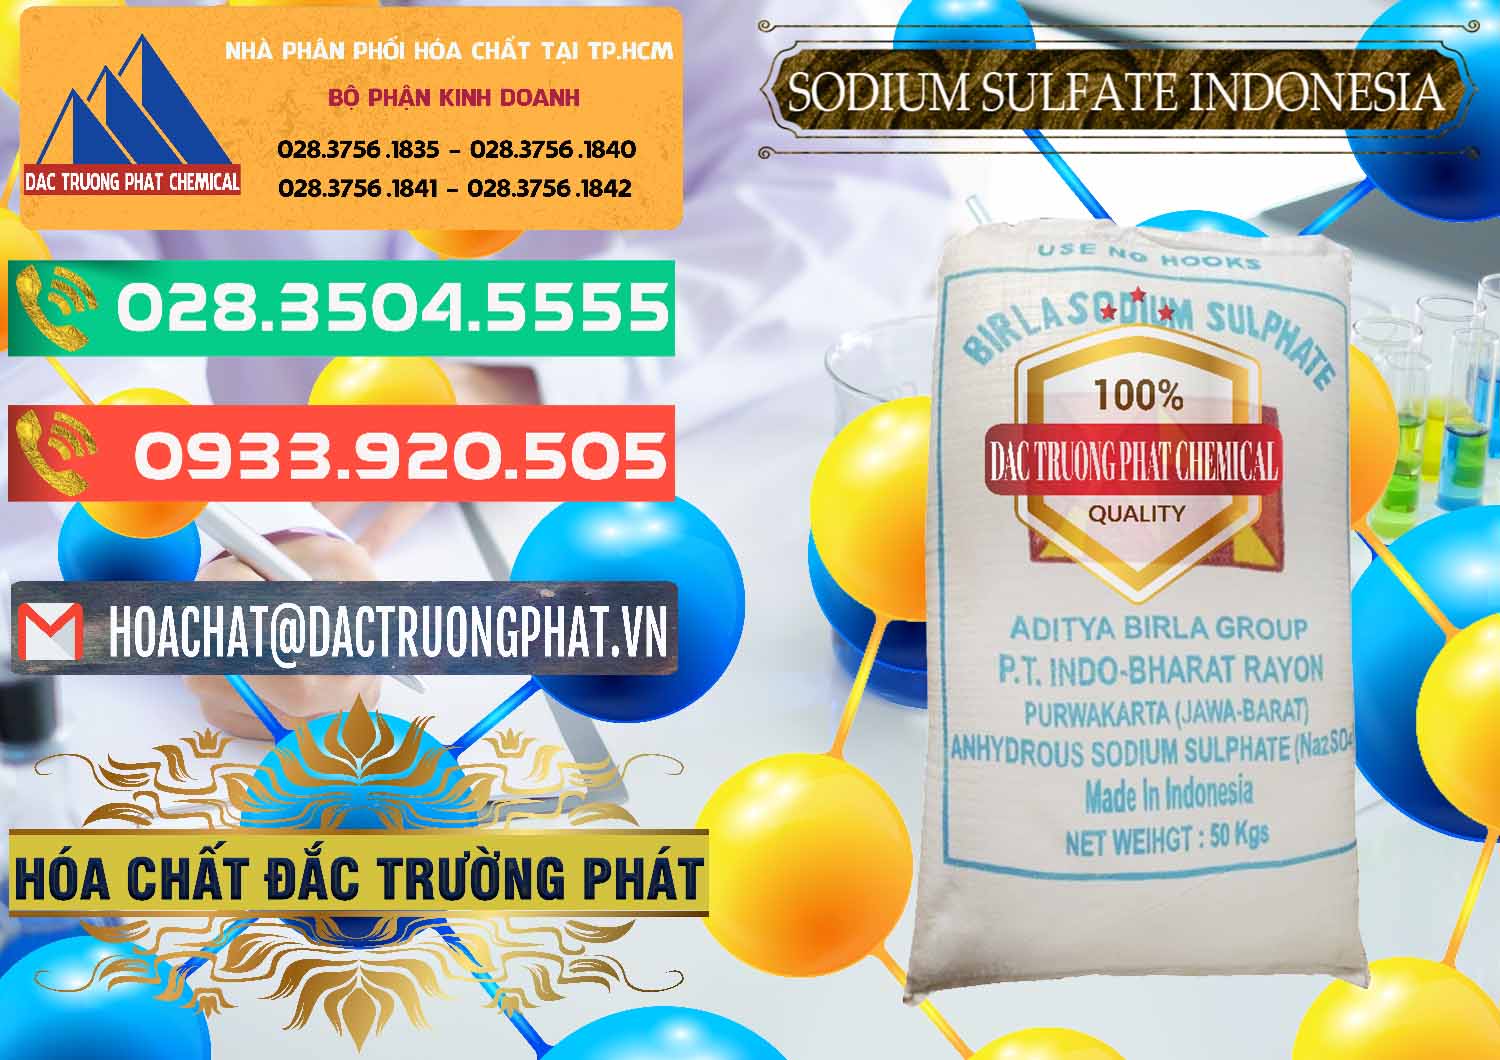 Cty chuyên bán - phân phối Sodium Sulphate - Muối Sunfat Na2SO4 99% Indonesia - 0459 - Công ty chuyên bán _ phân phối hóa chất tại TP.HCM - congtyhoachat.com.vn